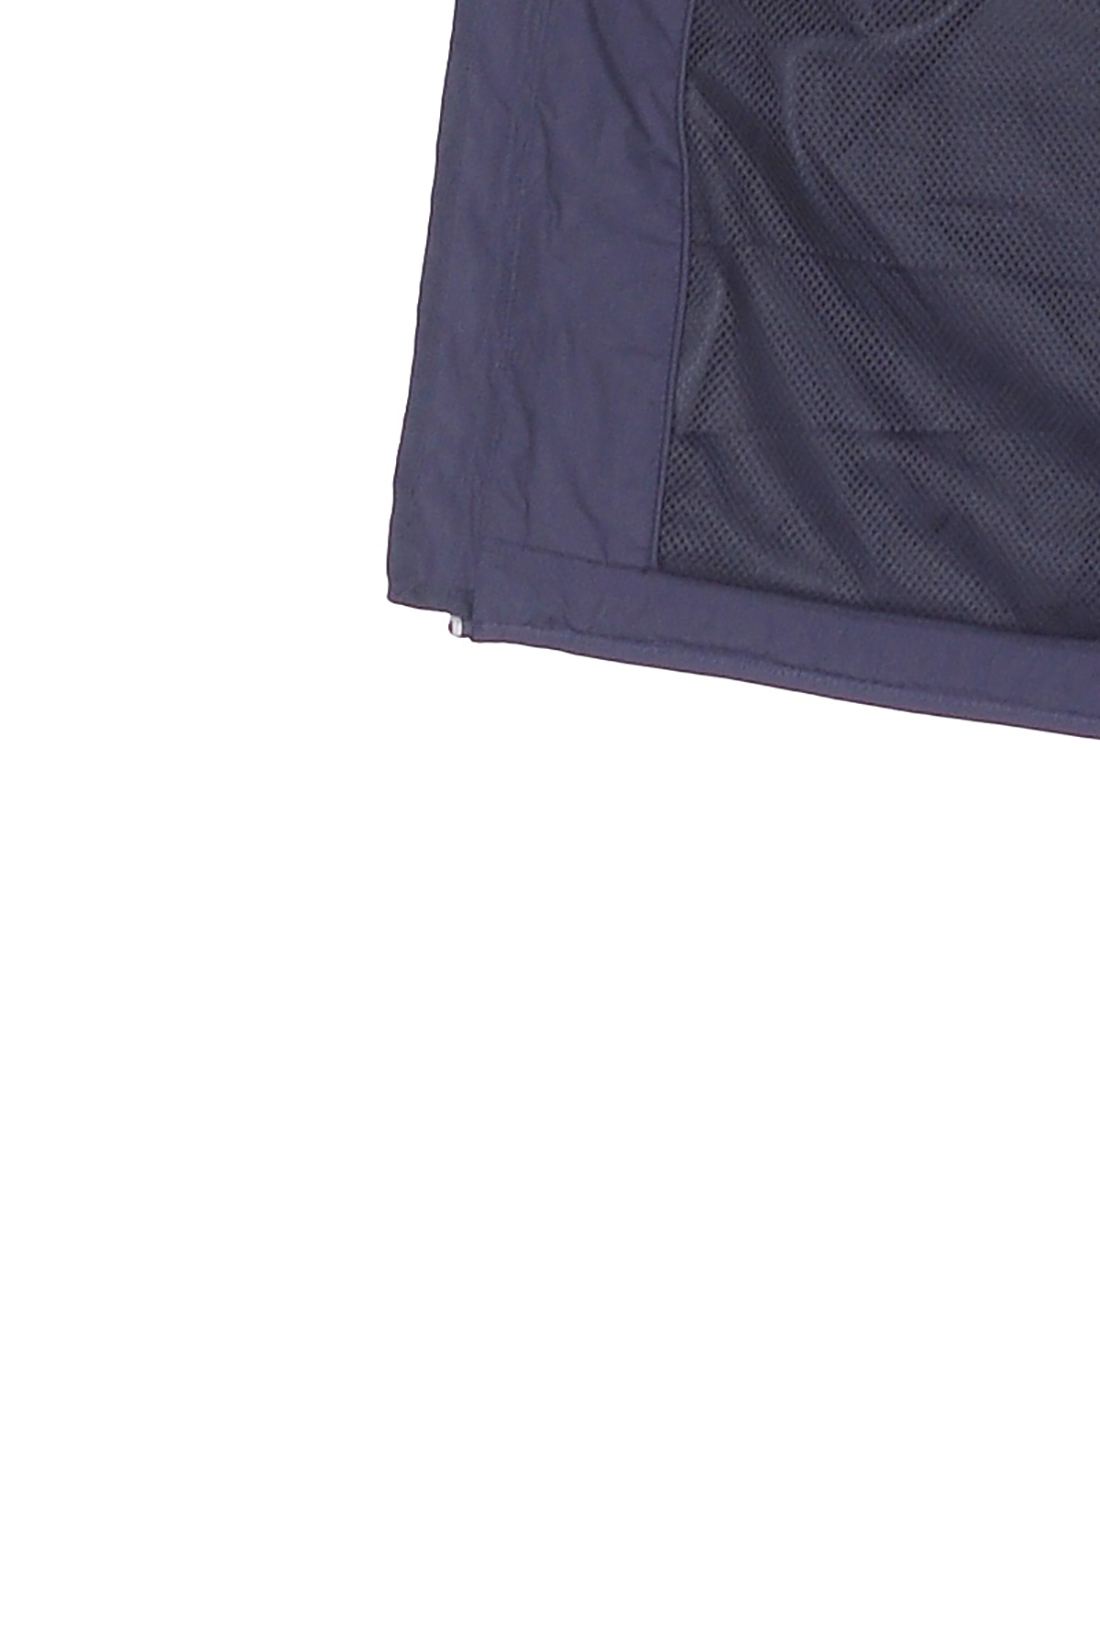 Ветровка с вентиляционной подкладкой (арт. baon B608025), размер 3XL, цвет синий Ветровка с вентиляционной подкладкой (арт. baon B608025) - фото 3